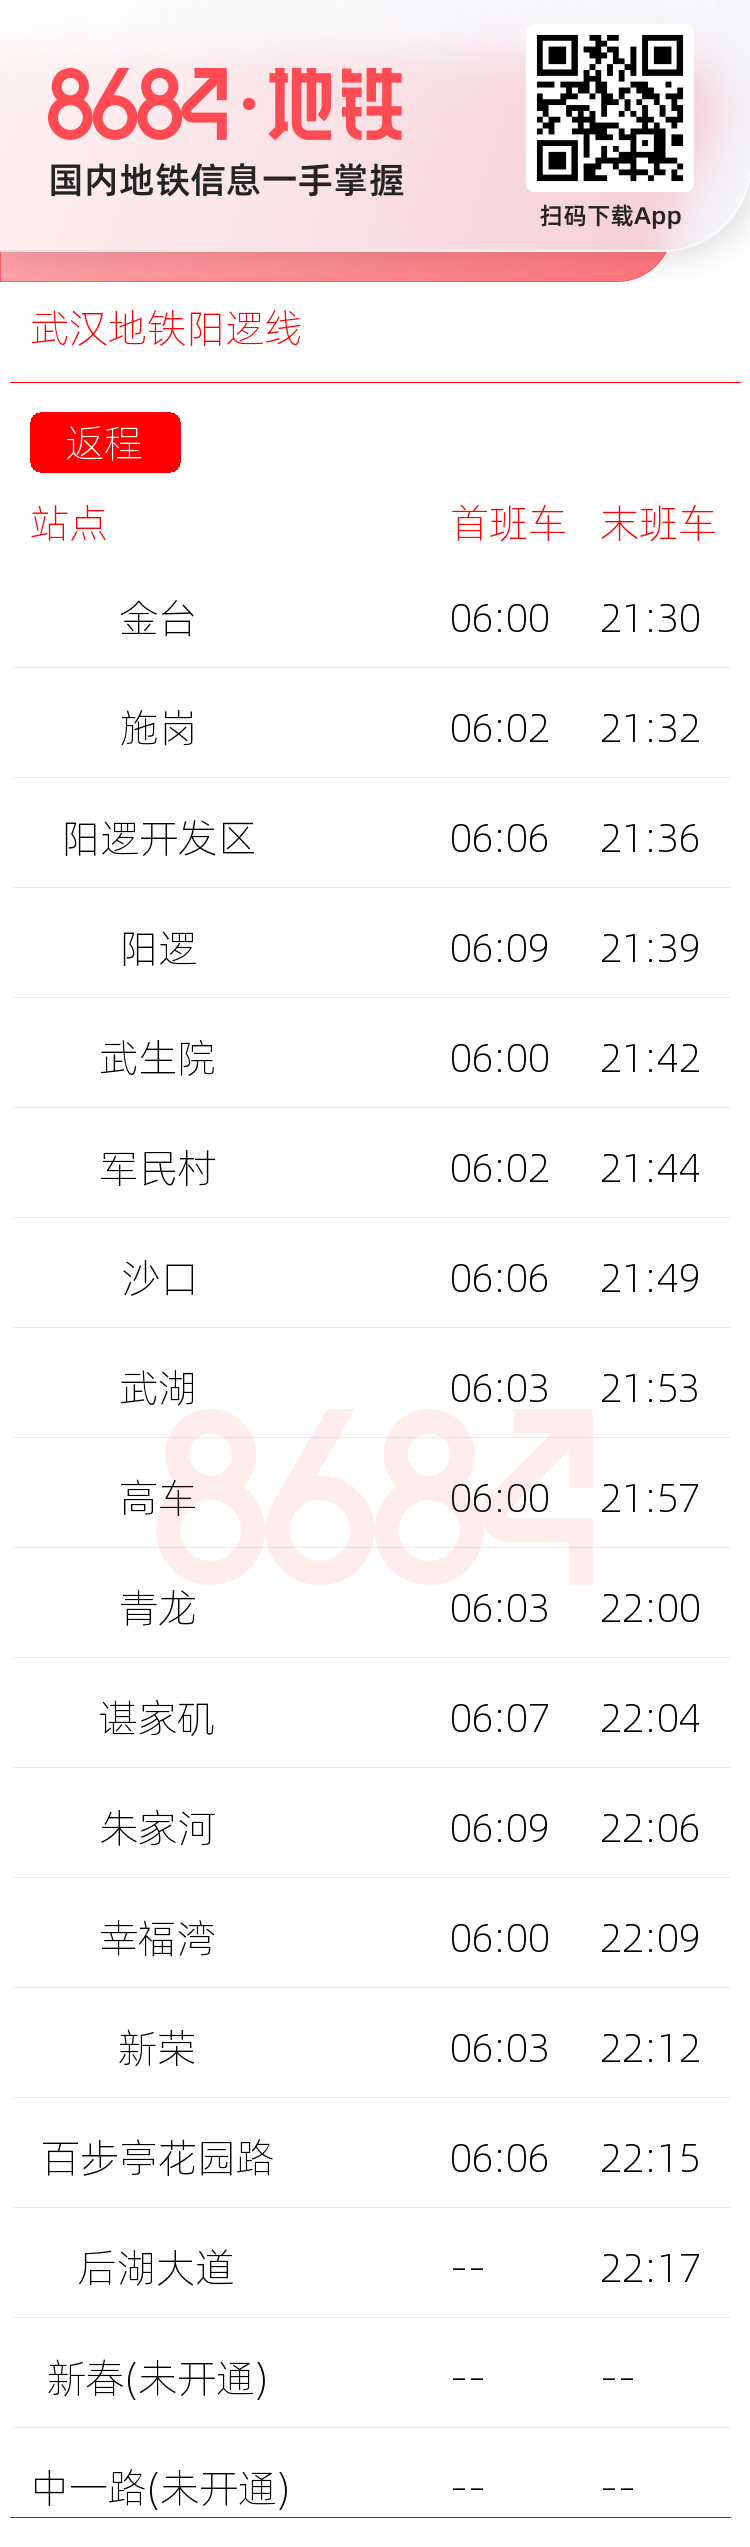 武汉地铁阳逻线运营时间表